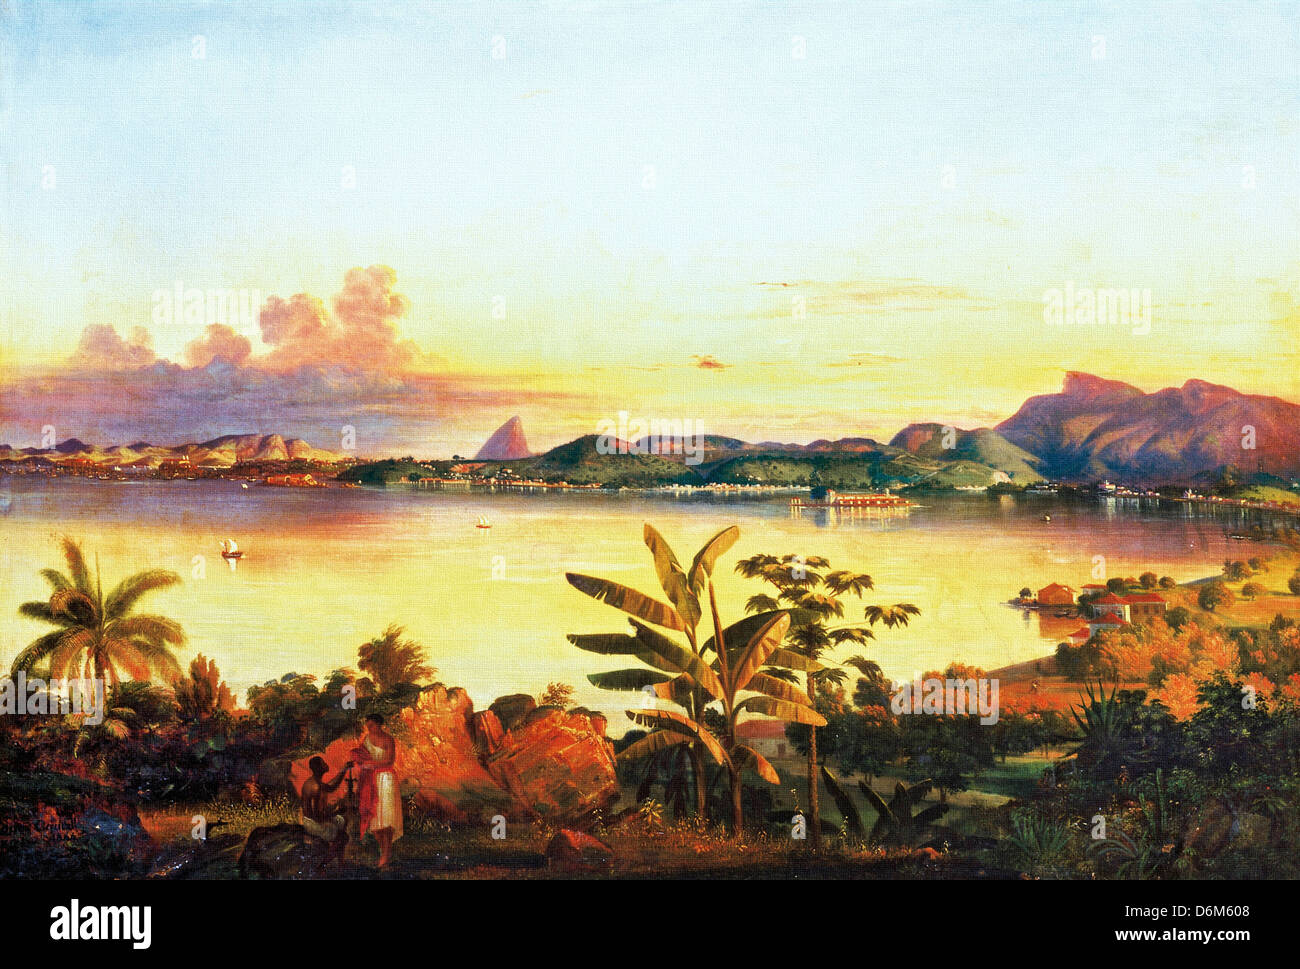 Alessandro Ciccarelli, Río de Janeiro 1844 Óleo sobre lienzo. Pinacoteca do Estado de Sao Paulo, Brasil. Foto de stock